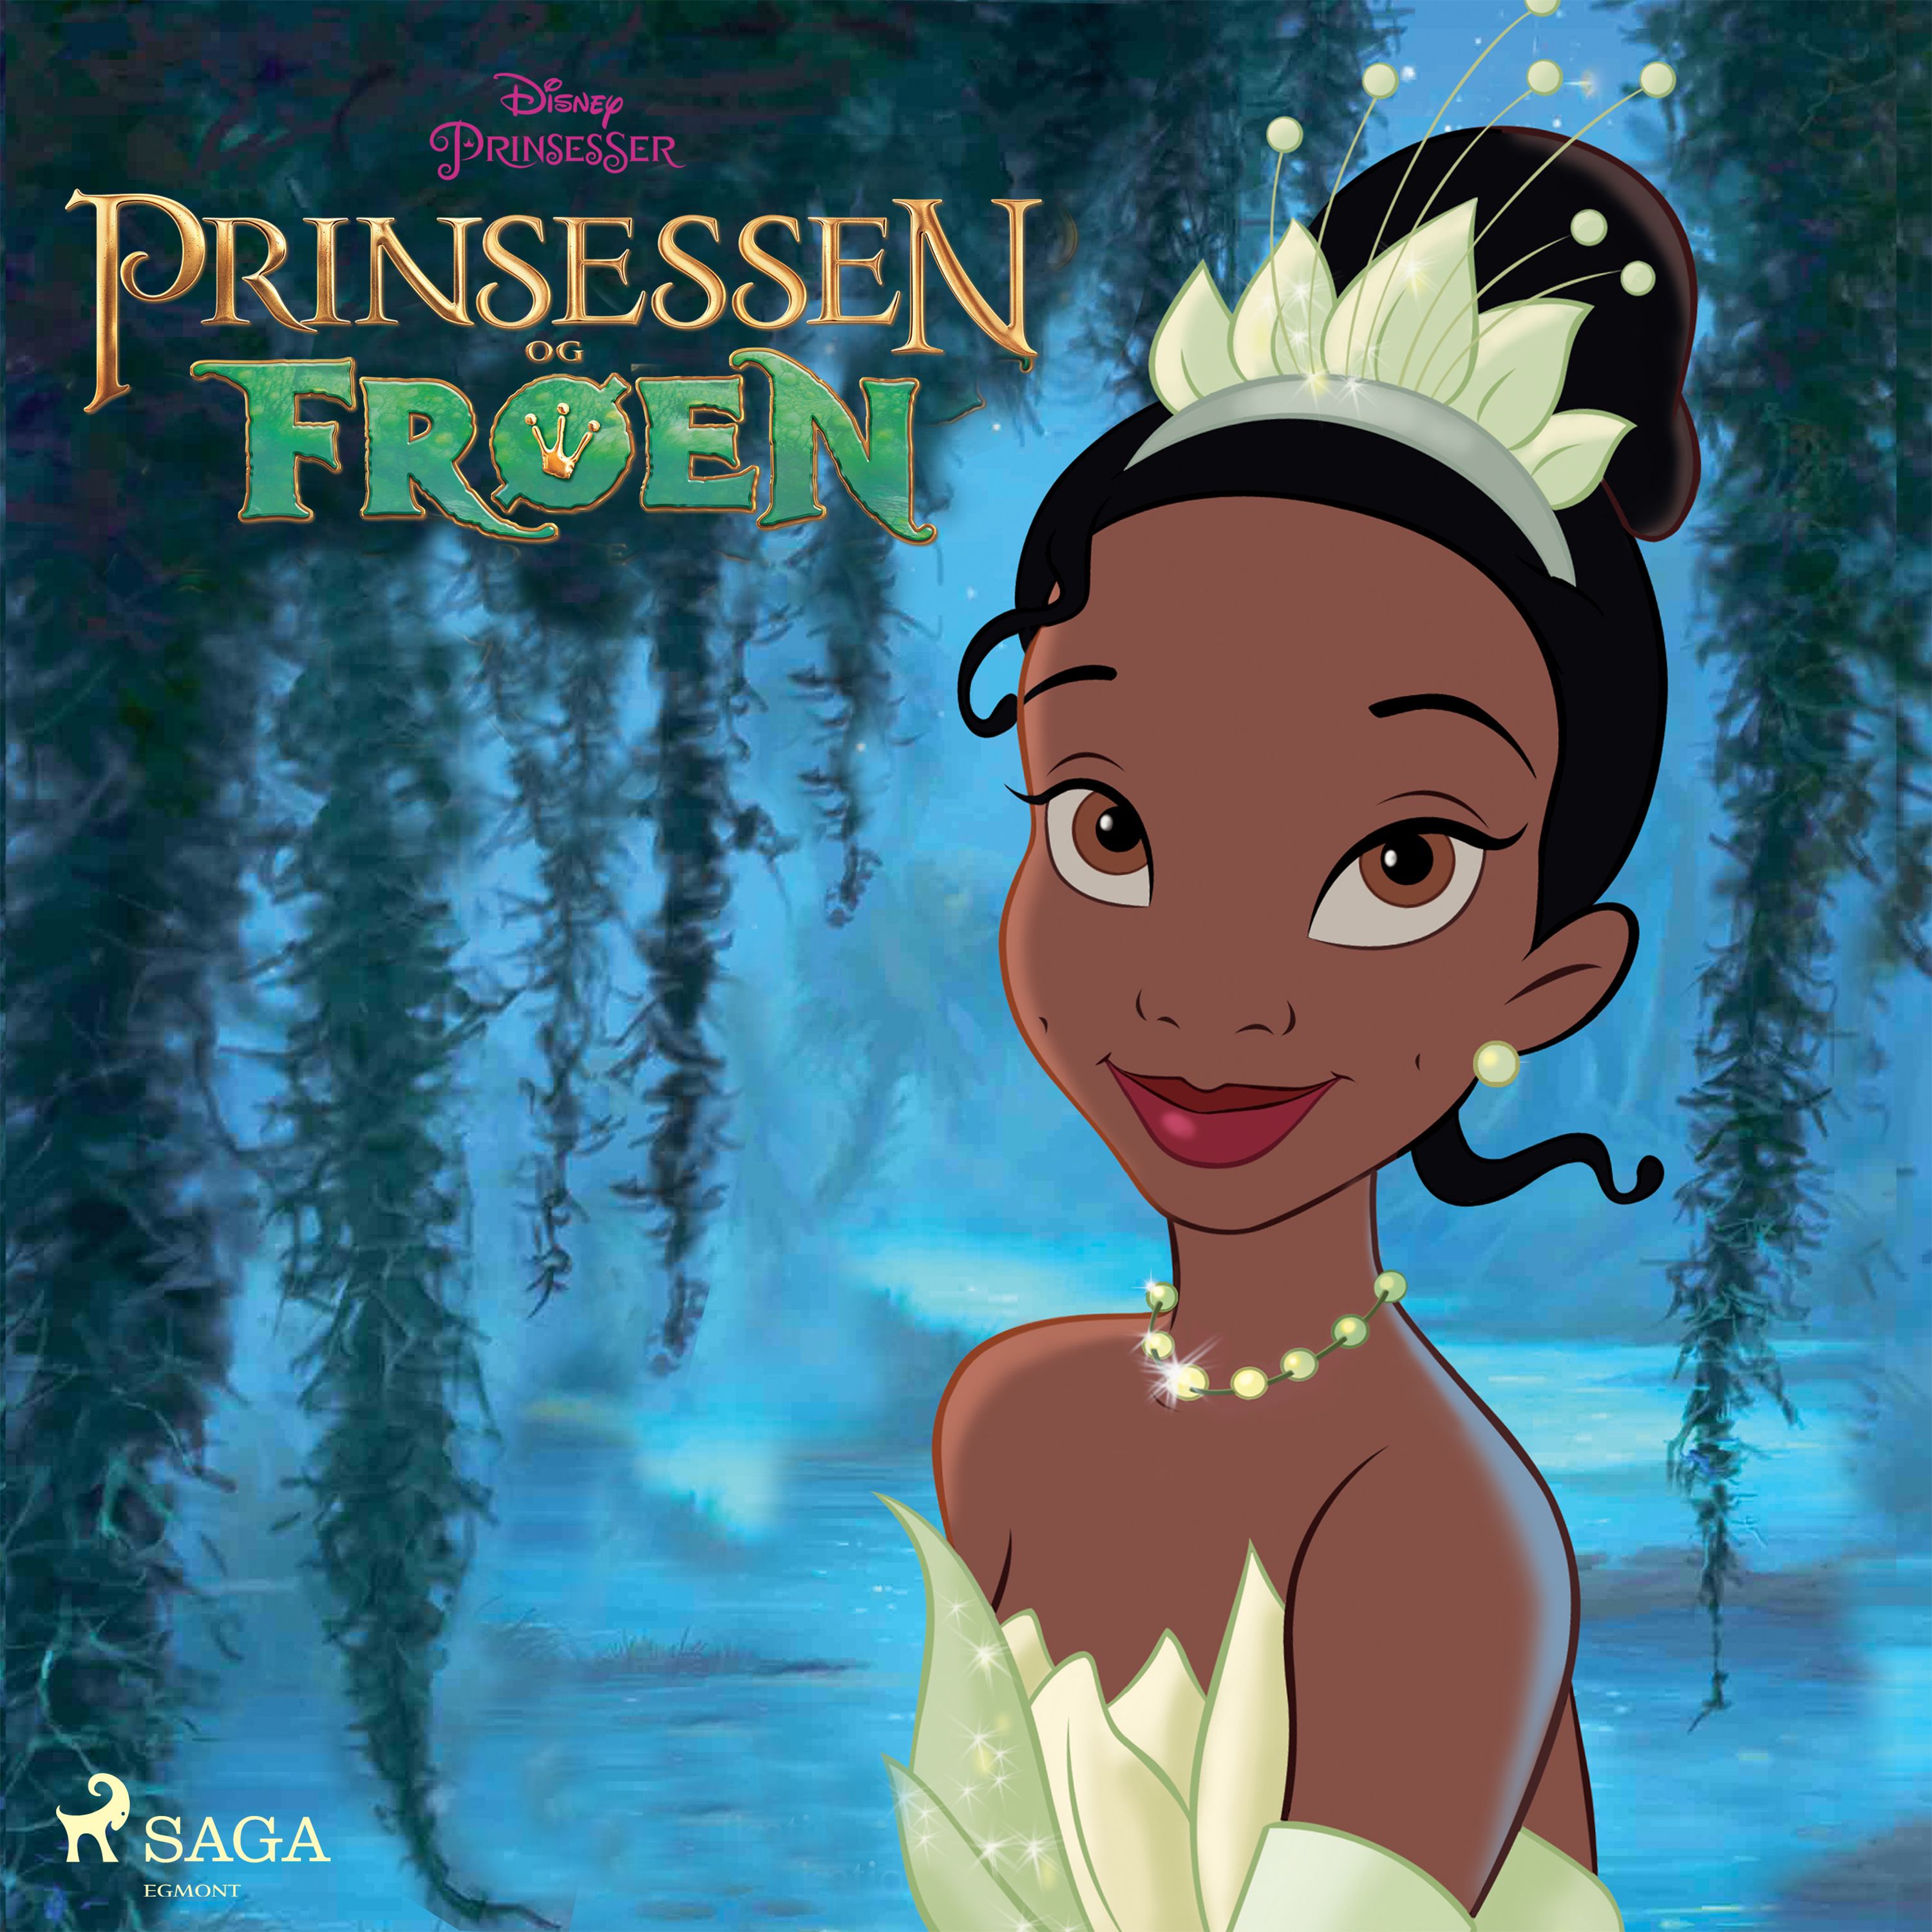 Prinsessen og frøen, audiobook by Disney